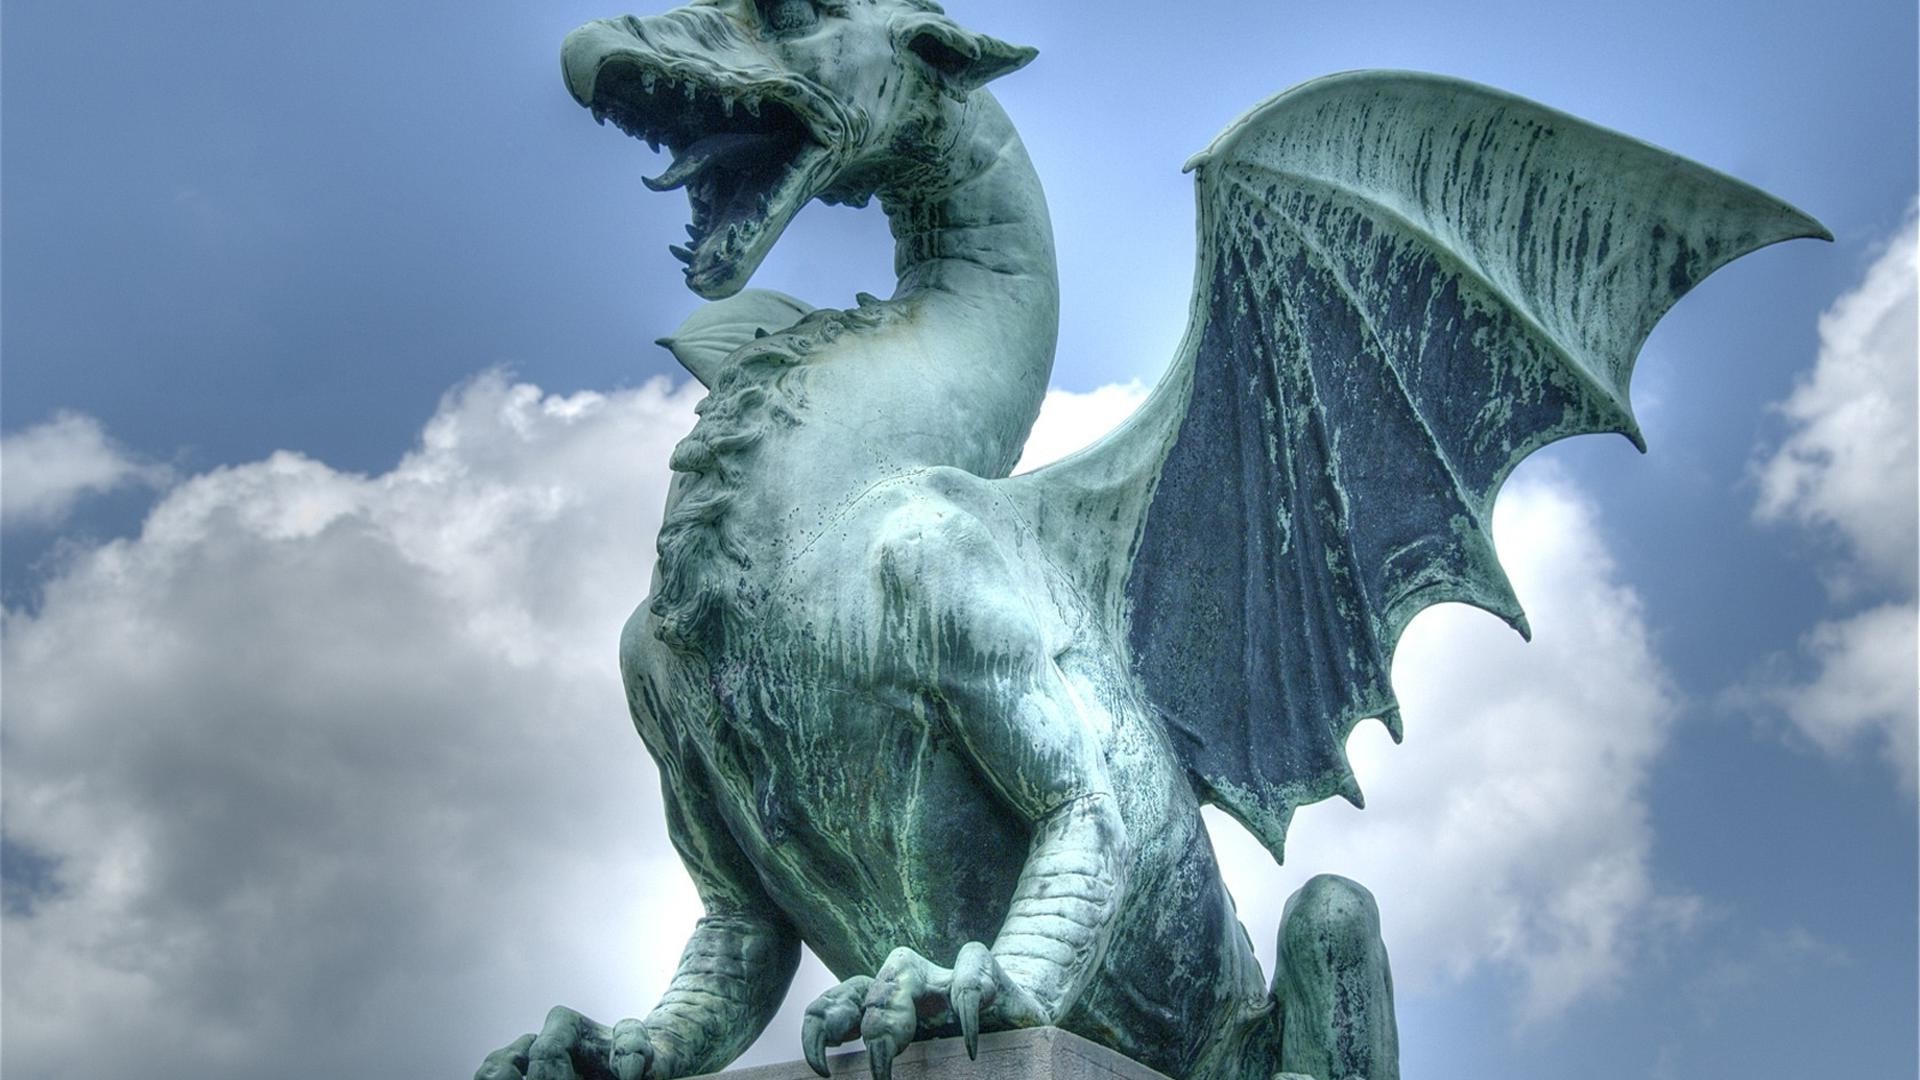 драконы скульптура статуя искусство небо символ путешествия памятник архитектура бронза музей иллюстрация дневной свет древние